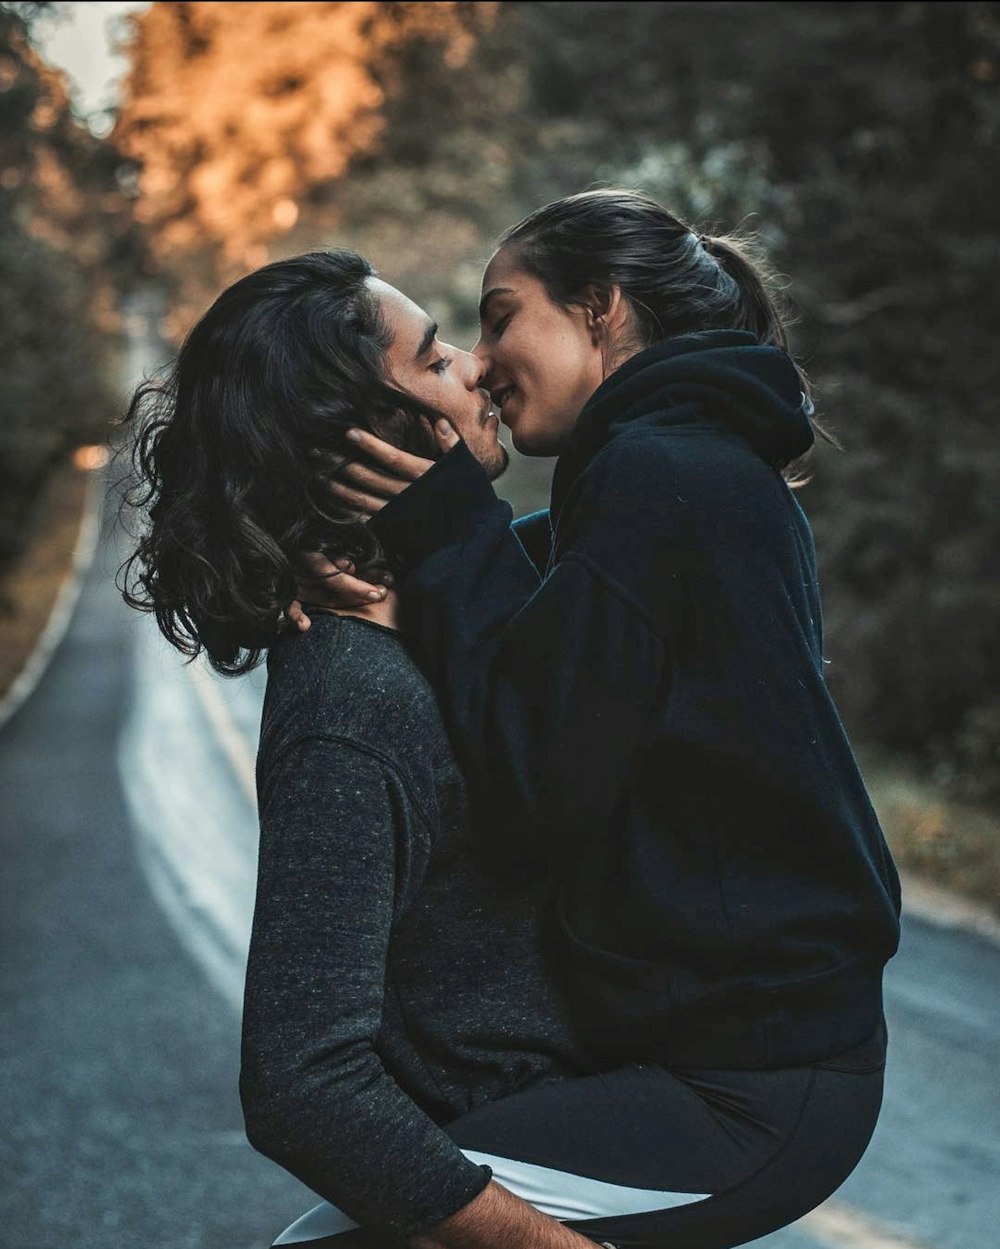 Mann und Frau küssen sich und stehen auf der Straße